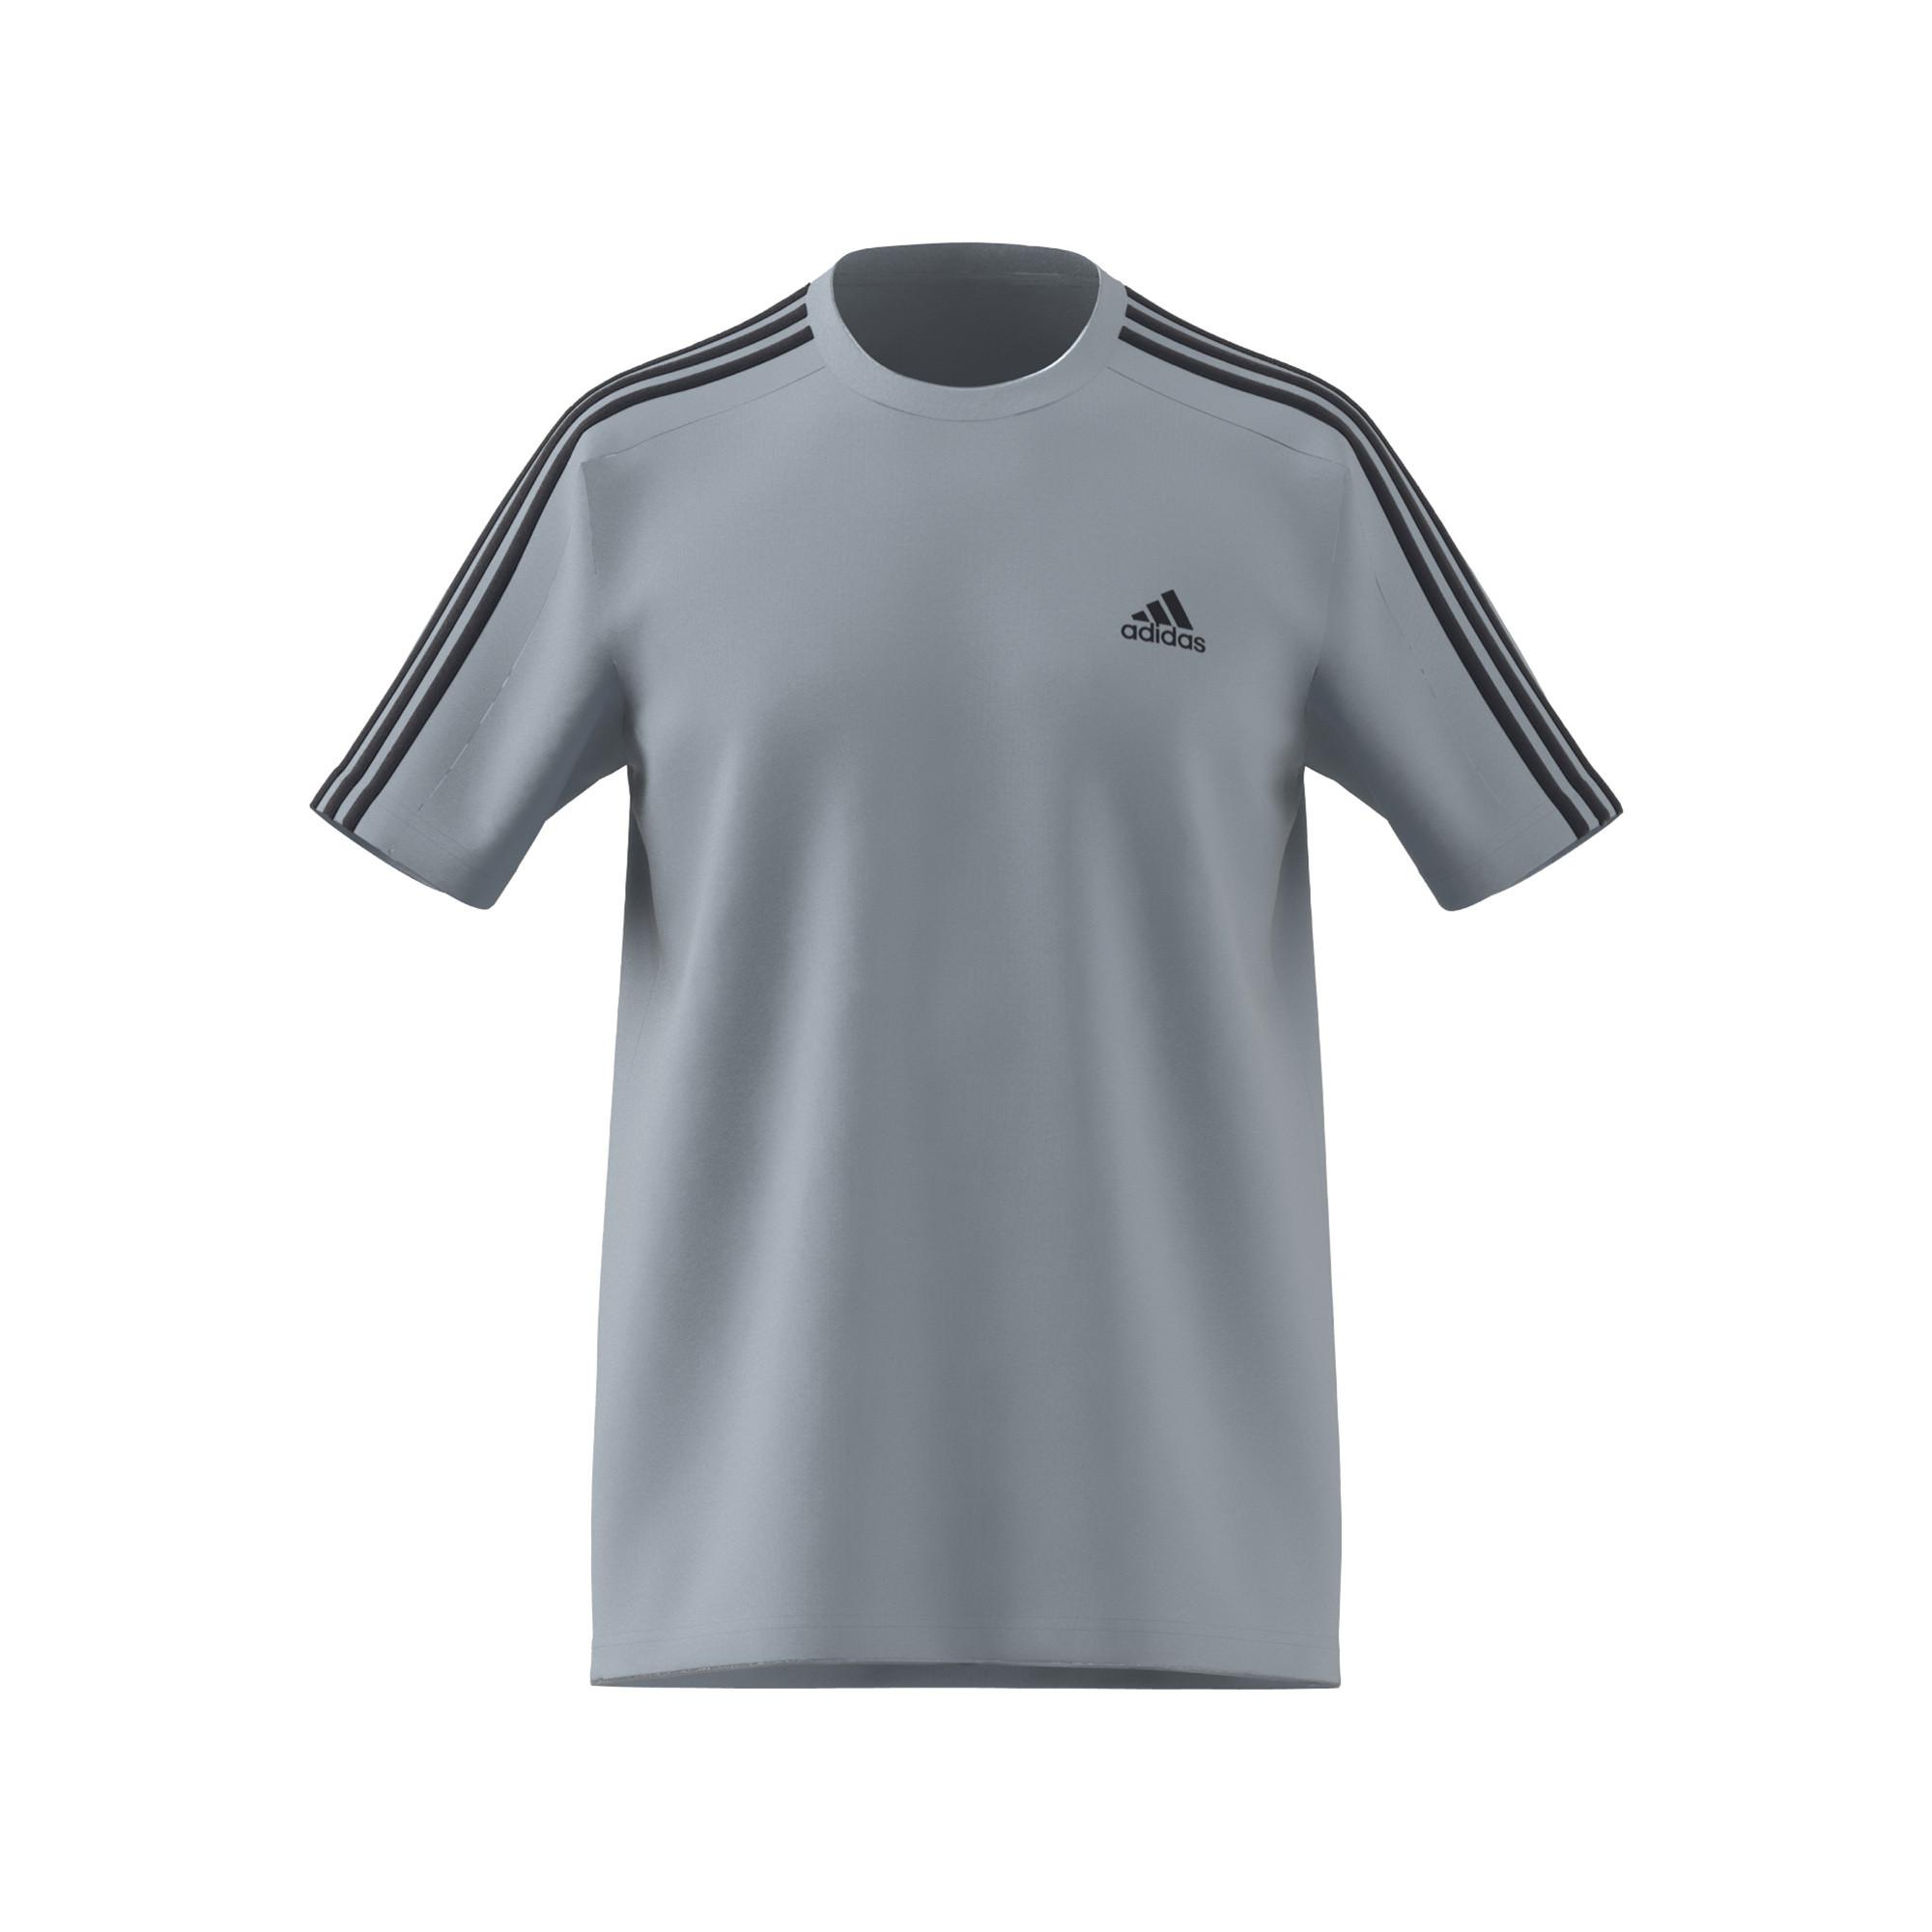 WONBLU 3S T T-Shirt, adidas MANOR kurzarm - Rundhals, SJ online | kaufen